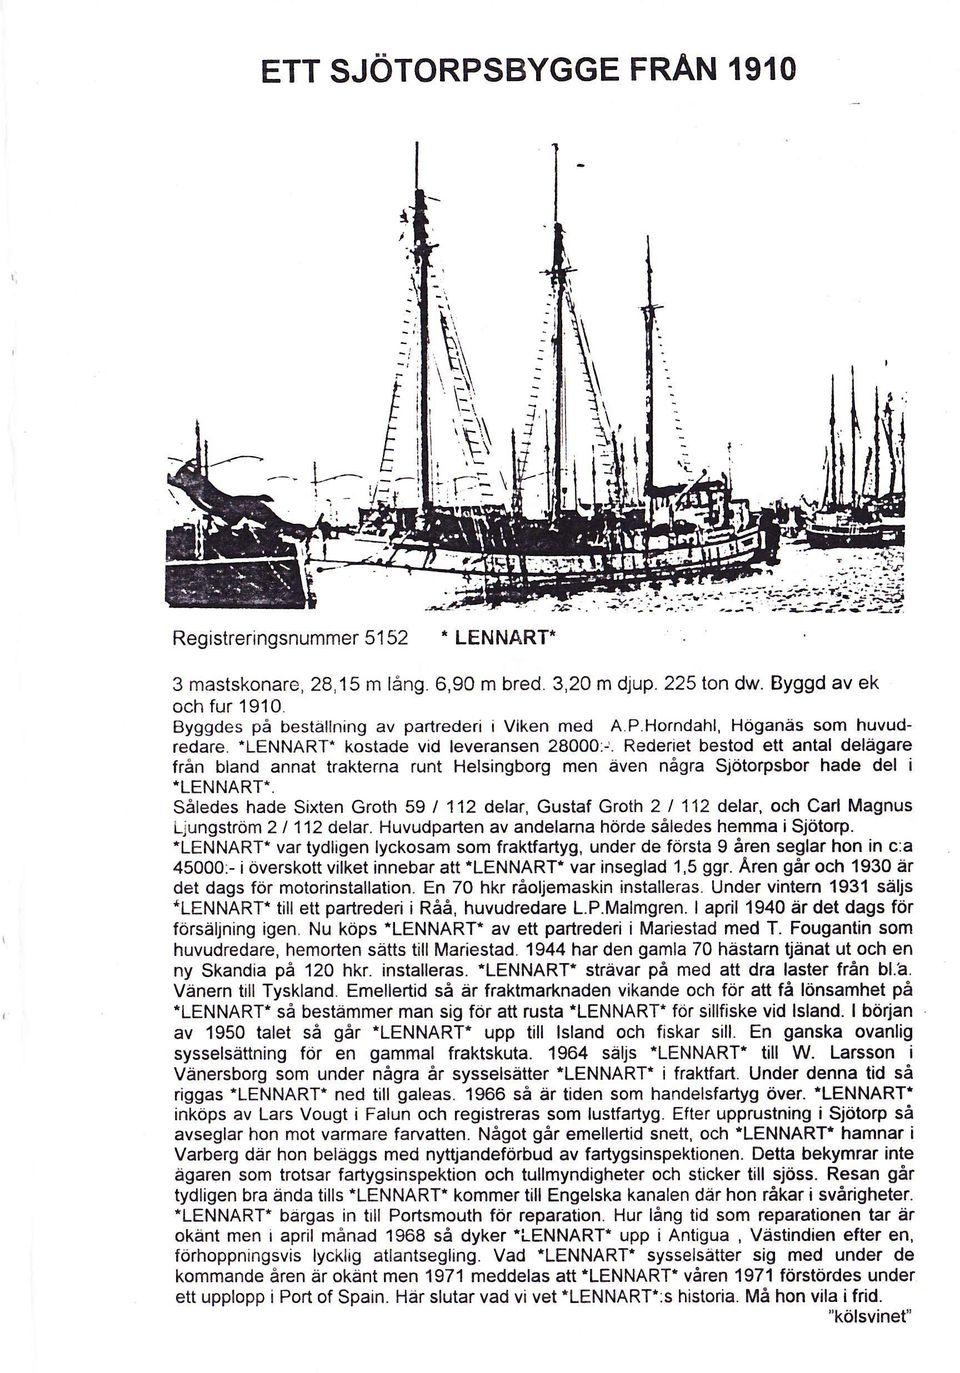 Rederiet bestod ett antal delägare från bland annat trakterna runt Helsingborg men även några Sjötorpsbor hade del i -LENNART-.